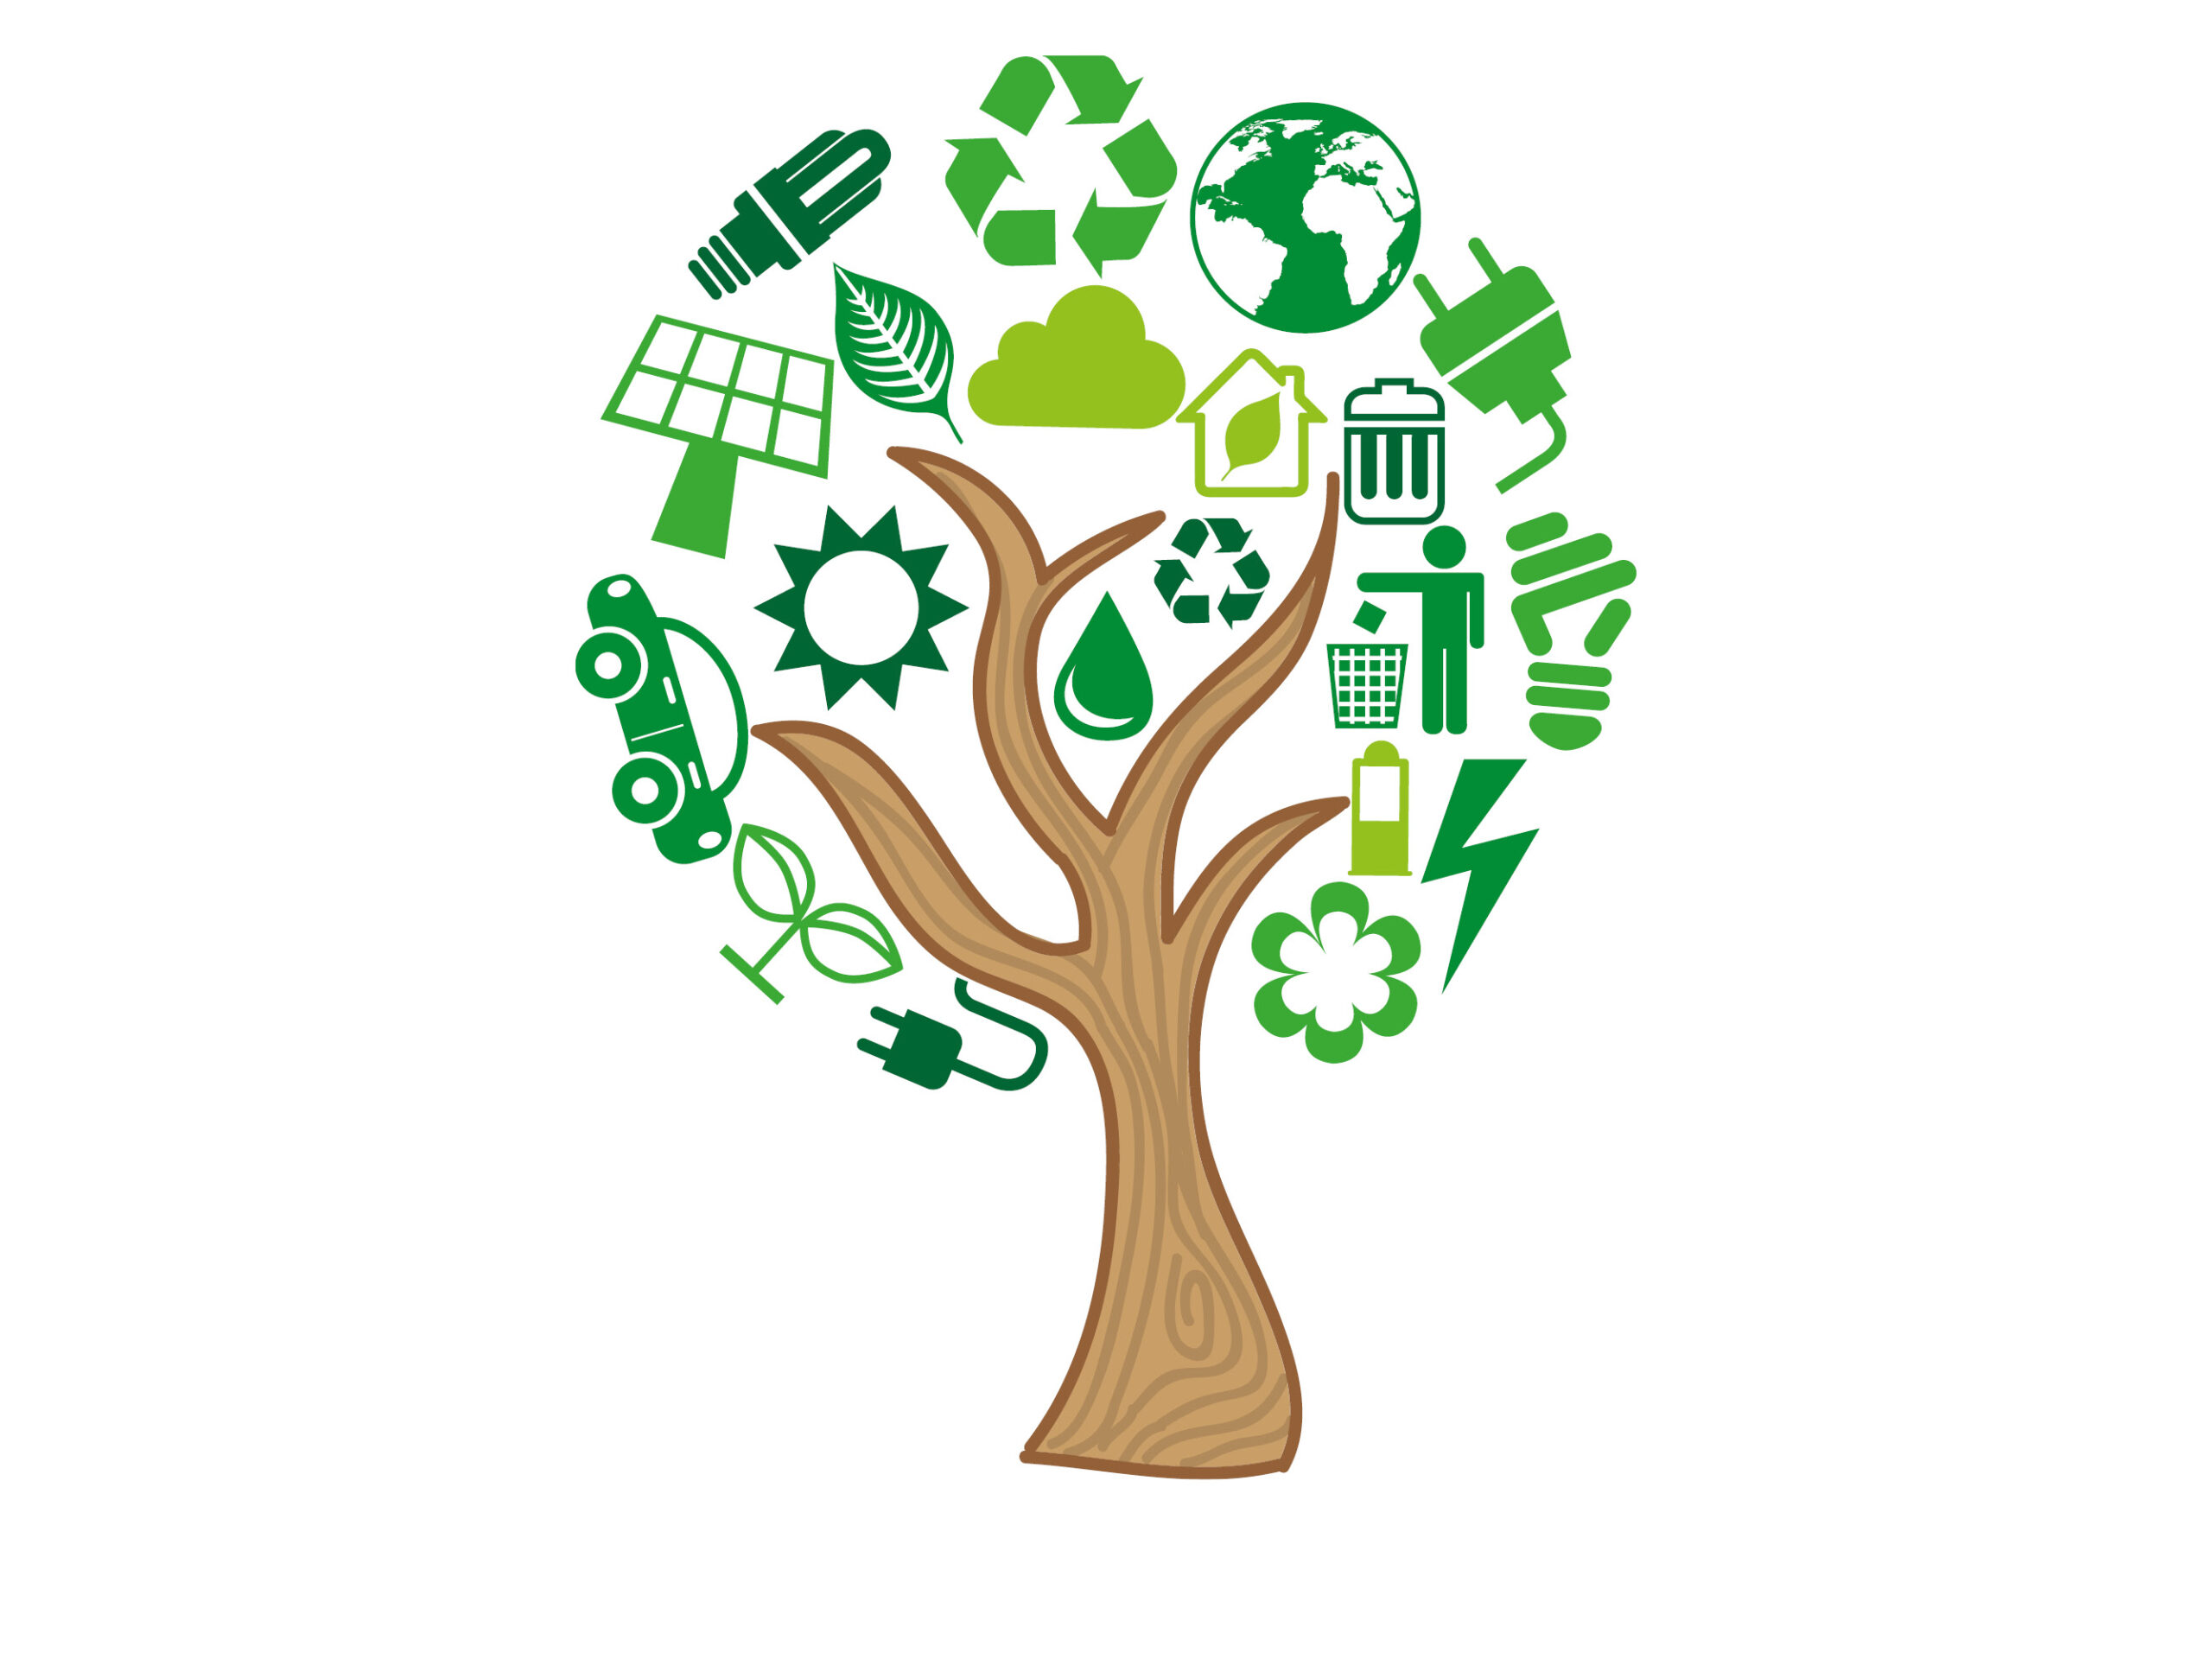 Illustration. Ett träd med symboler istället för löv. Symbolerna representerar olika delar i energi och klimatrådgivning och innehåller bland annat symboler för solpaneler, elkontakter, vattendroppar, batterier och växter.